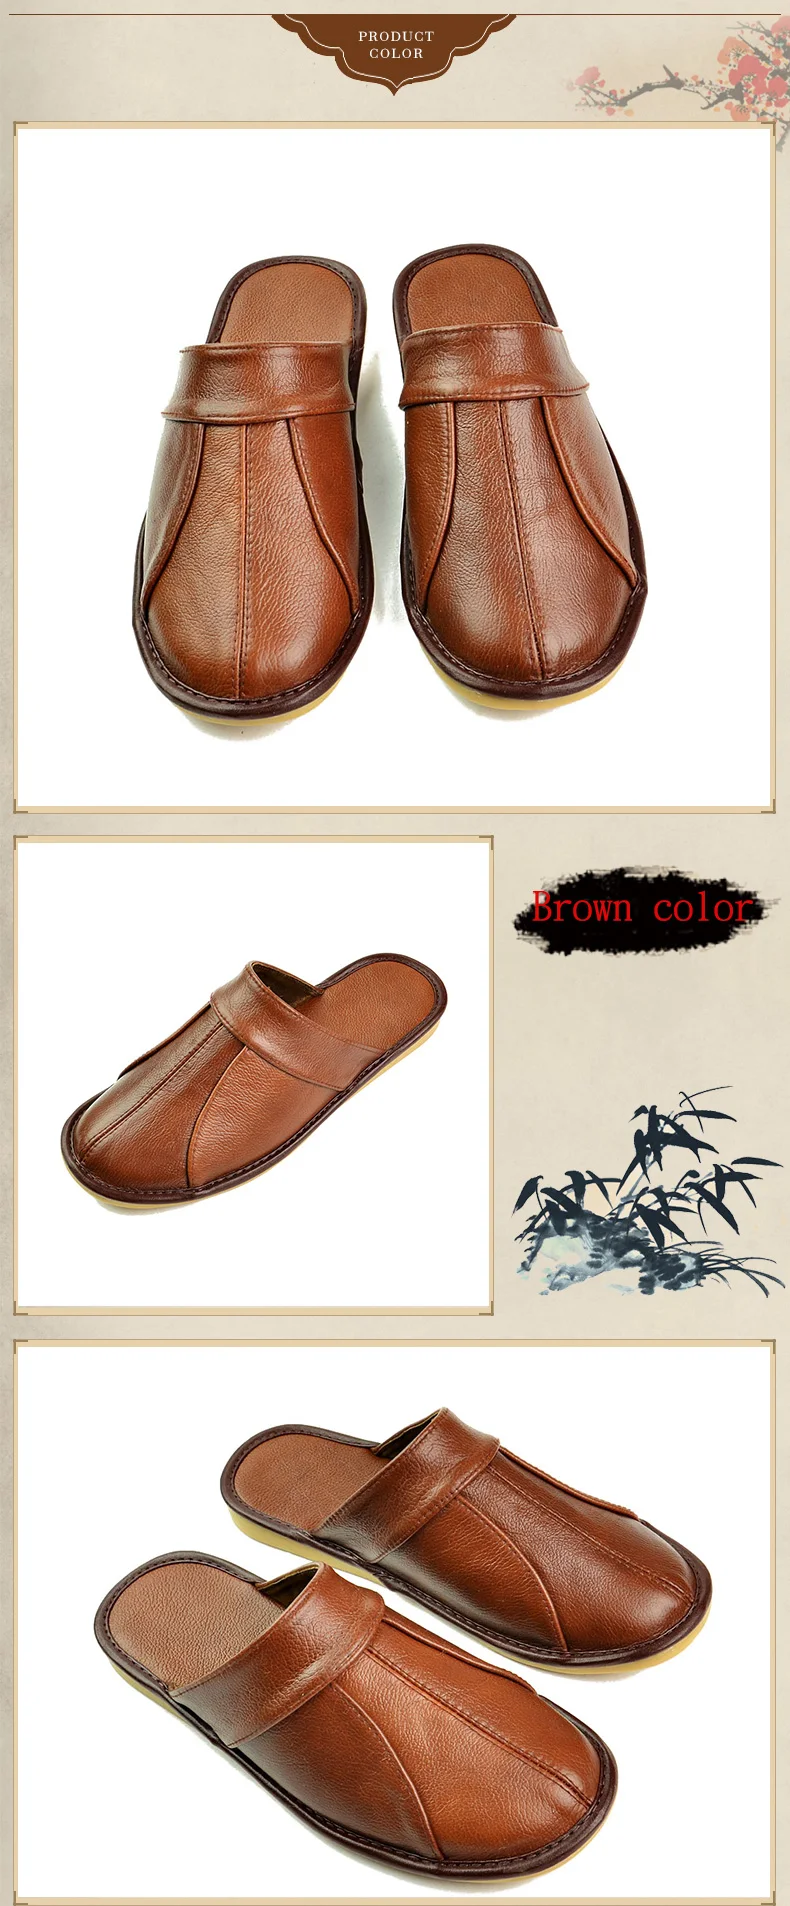 Mntrerm/весенние мужские тапочки без шнуровки; мягкая удобная обувь из коровьей кожи ручной работы; цвет черный, коричневый; обувь из натуральной кожи